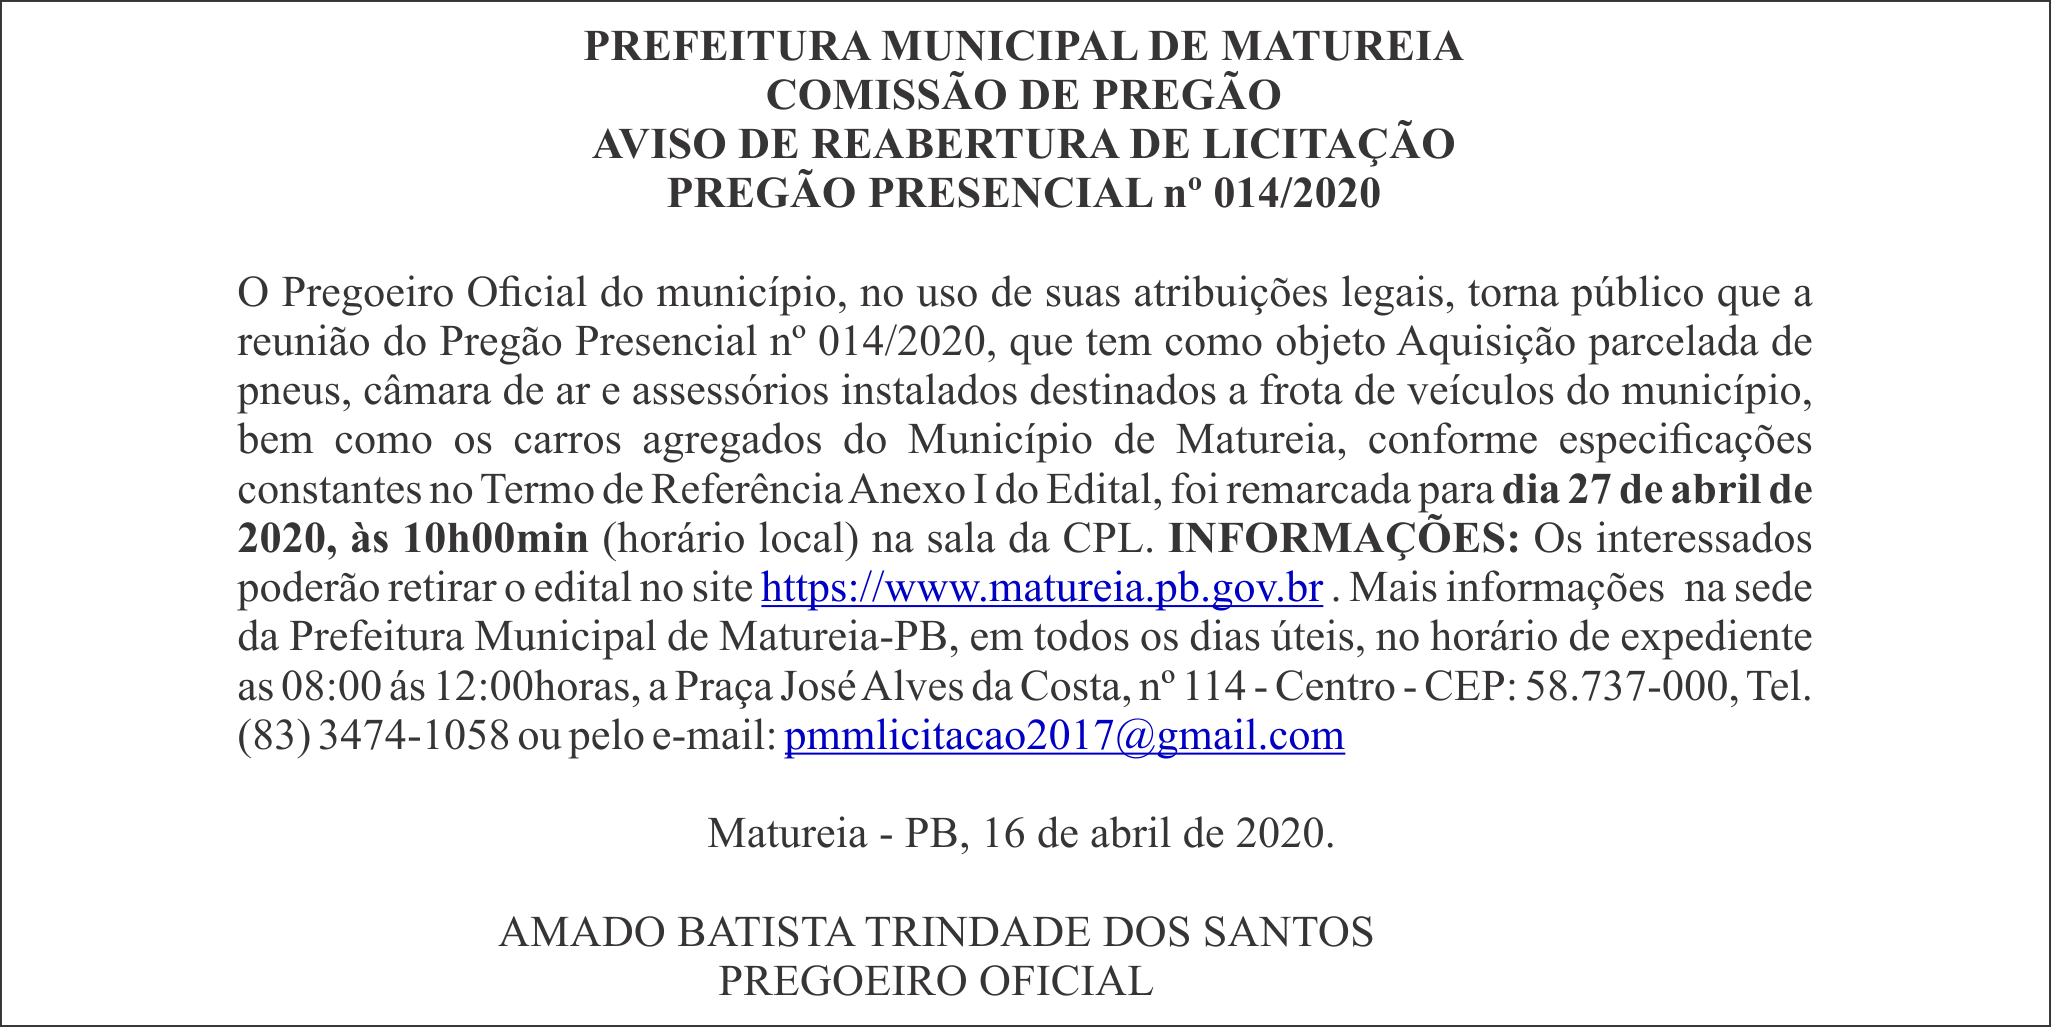 PREFEITURA MUNICIPAL DE MATUREIA – AVISO DE REABERTURA DE LICITAÇÃO – PREGÃO PRESENCIAL Nº 014/2020